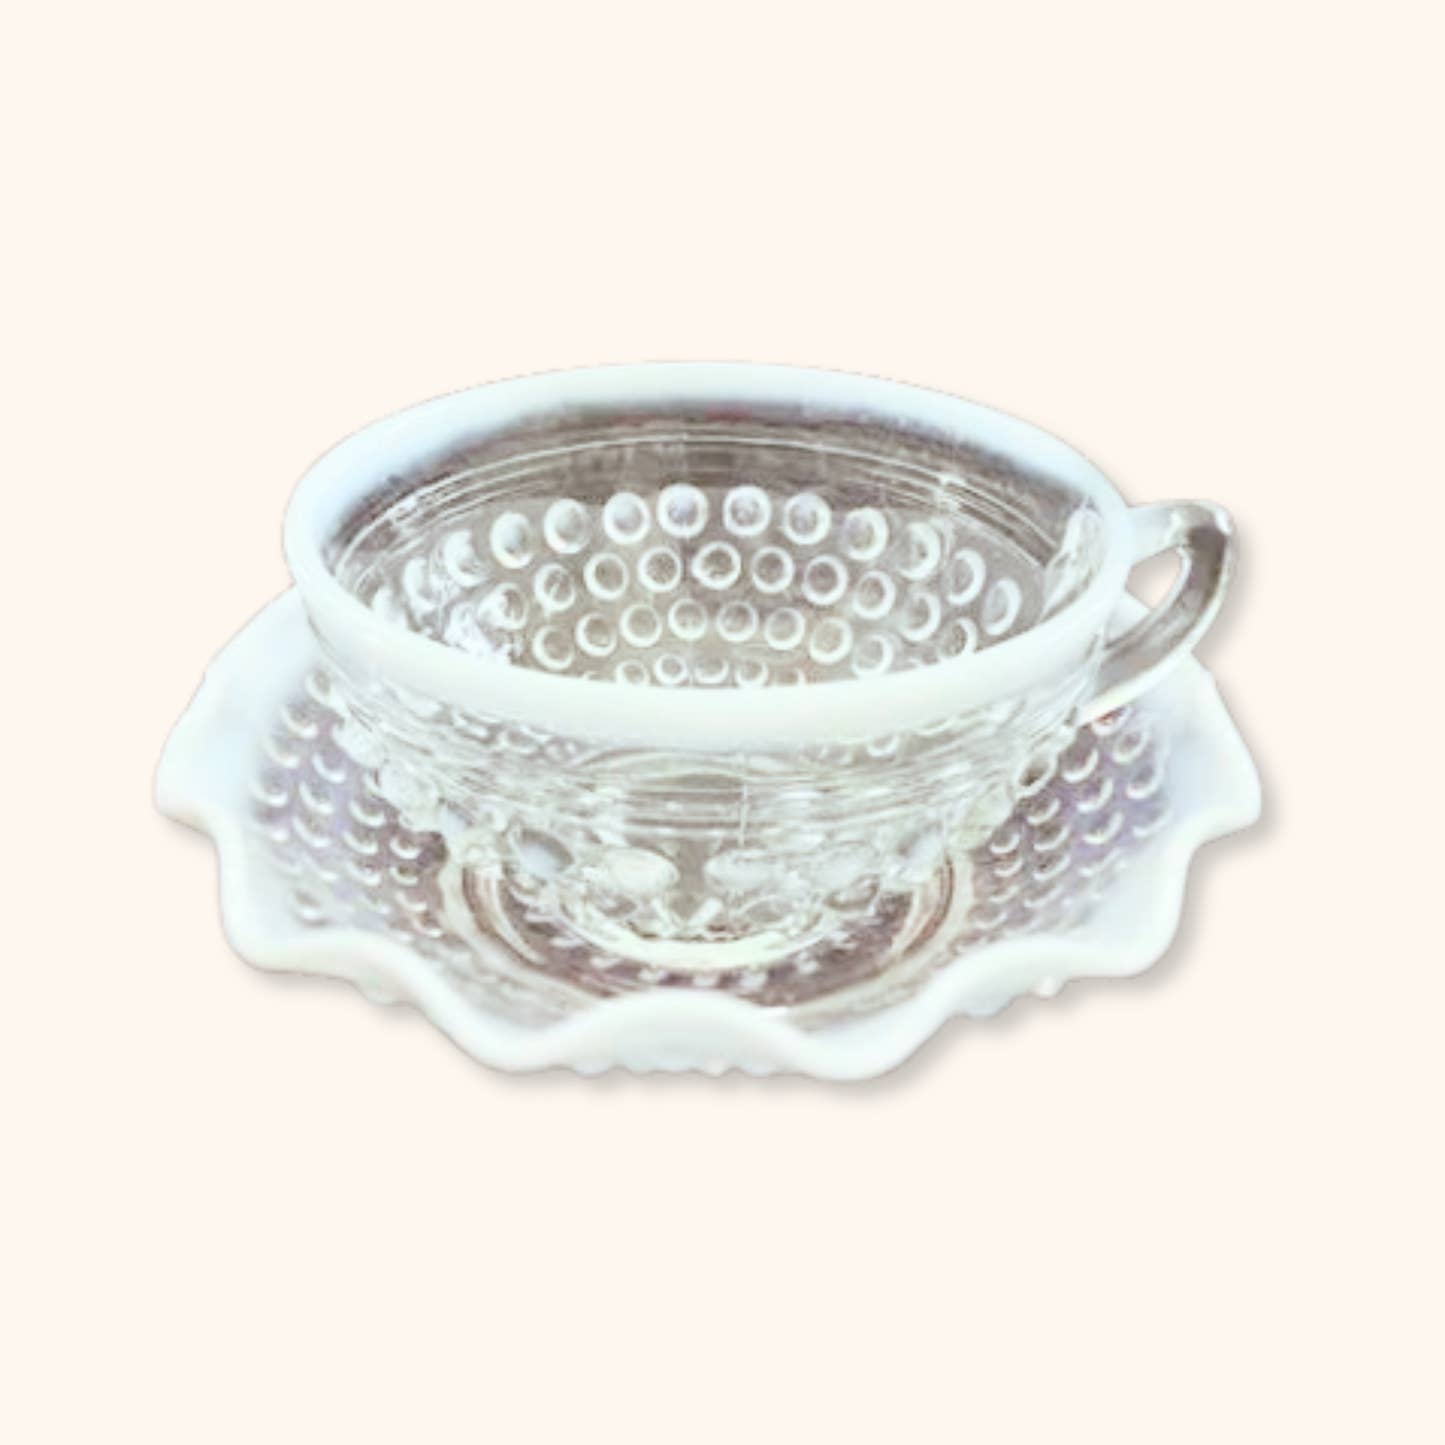 Vintage Moonstone Hobnail Teacup & Saucer